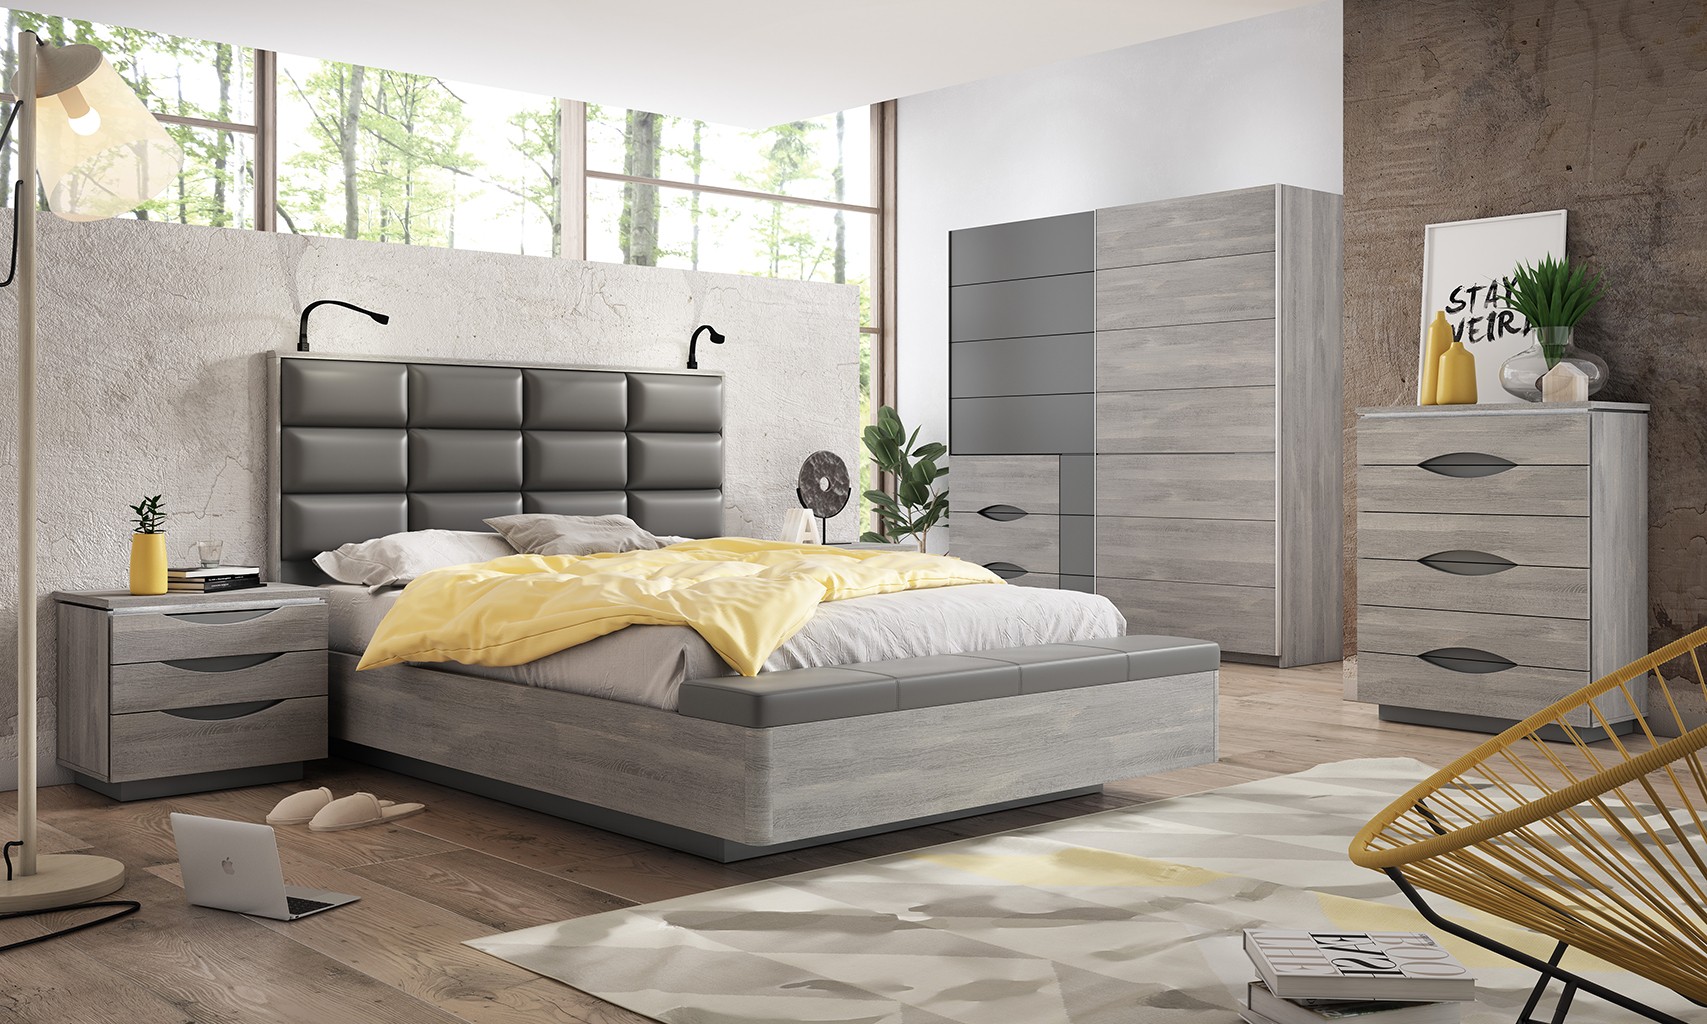 Cómodas para dormitorio  Comprar cómodas baratas - HOMNLIVING™ (3)